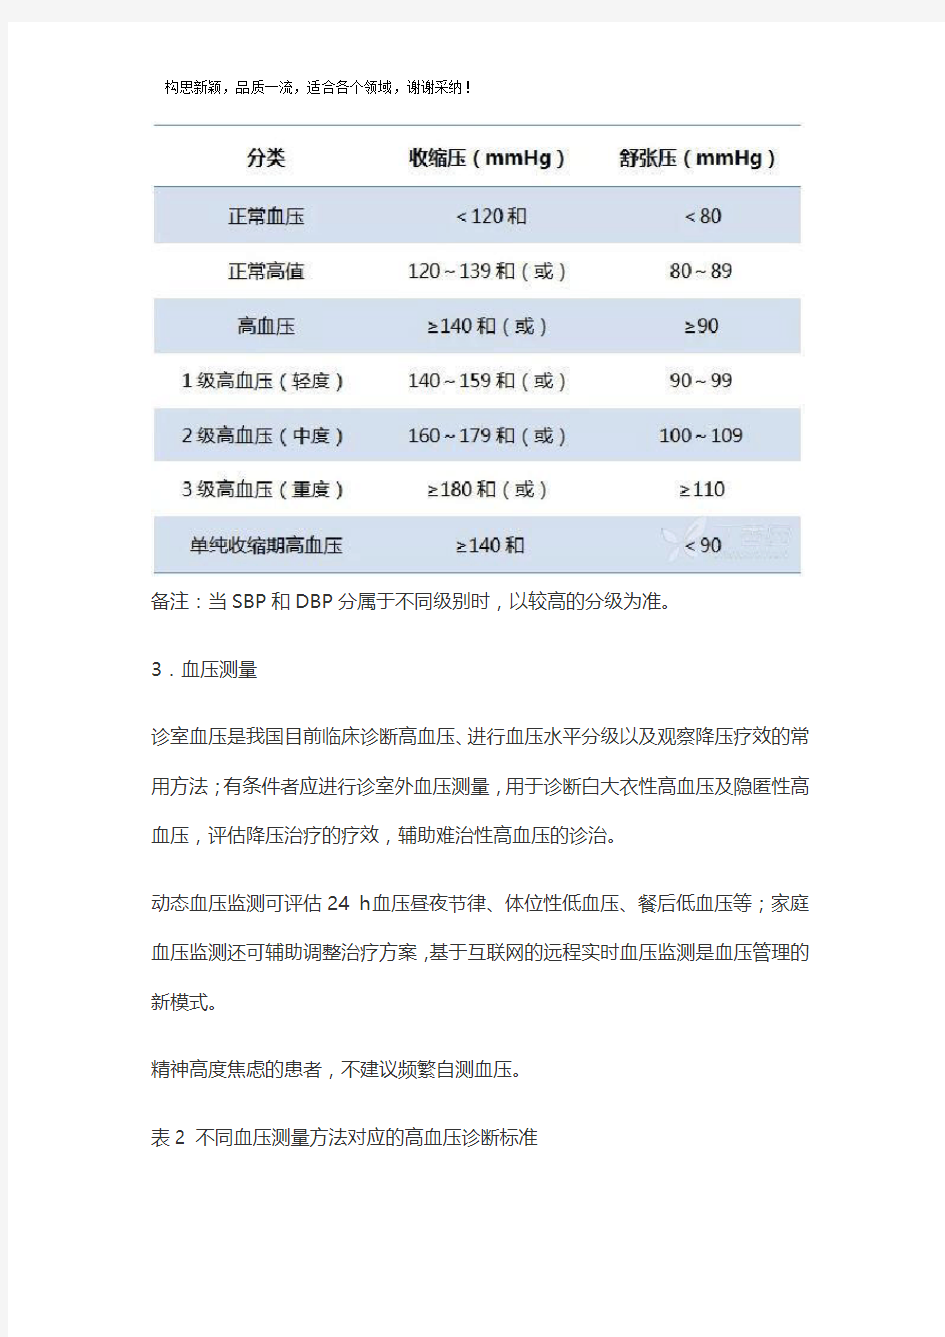 2019年中国高血压防治指南修订版(征求意见稿)